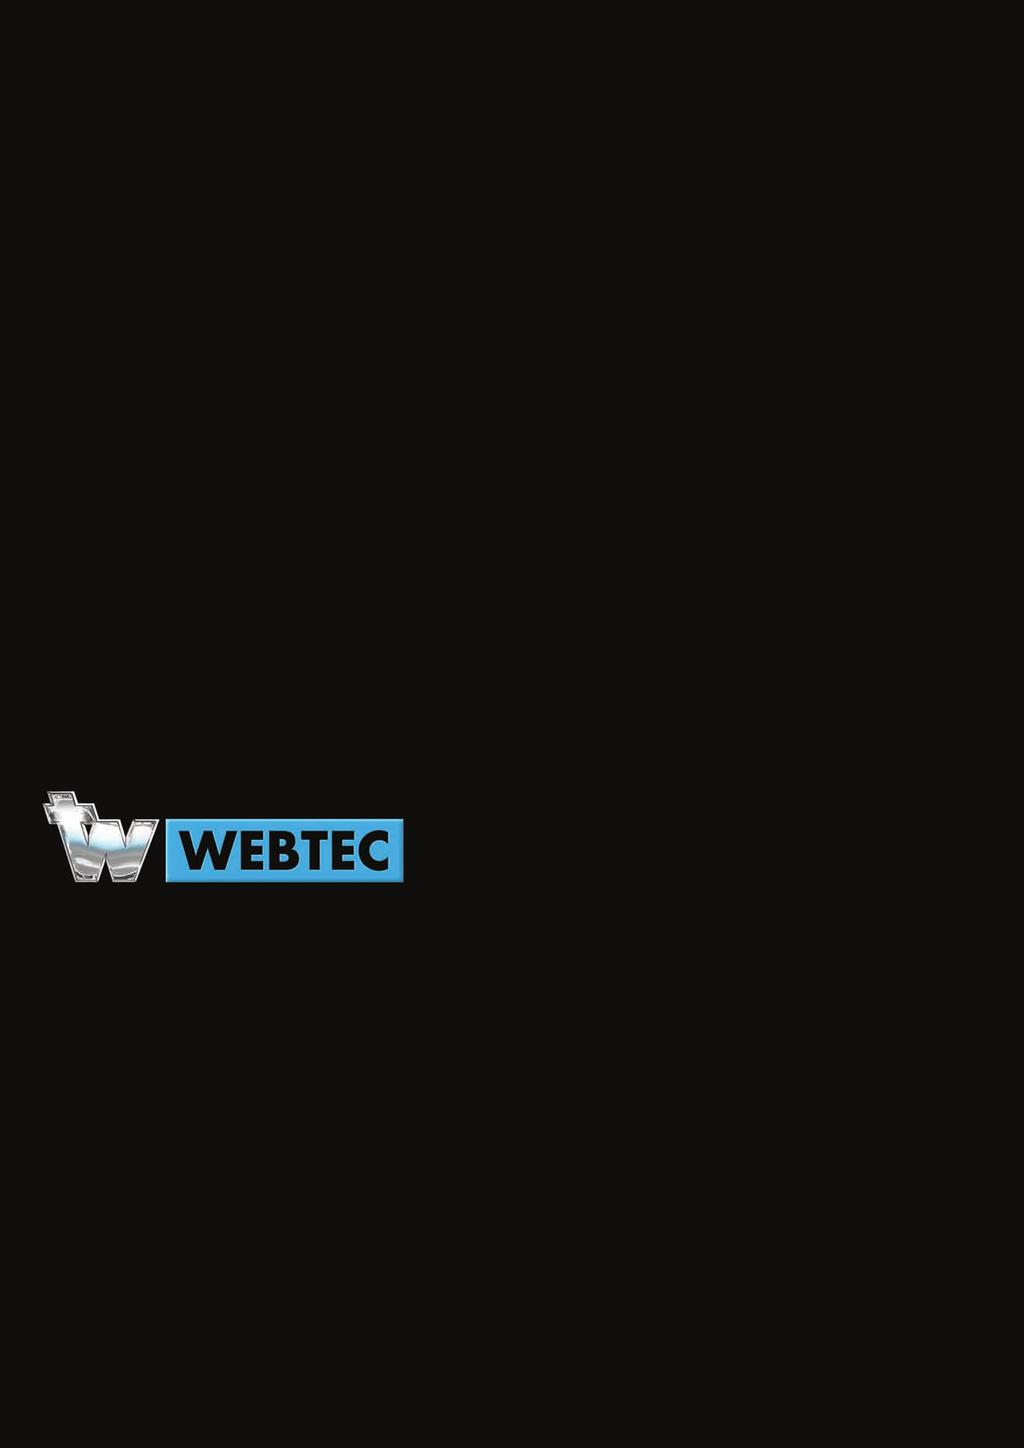 Webster Messtechnik (Ein Unternehmen der Webtec Gruppe) An der Palmweide 55, 44227 Dortmund Tel: +49 (0) 231-9759-747